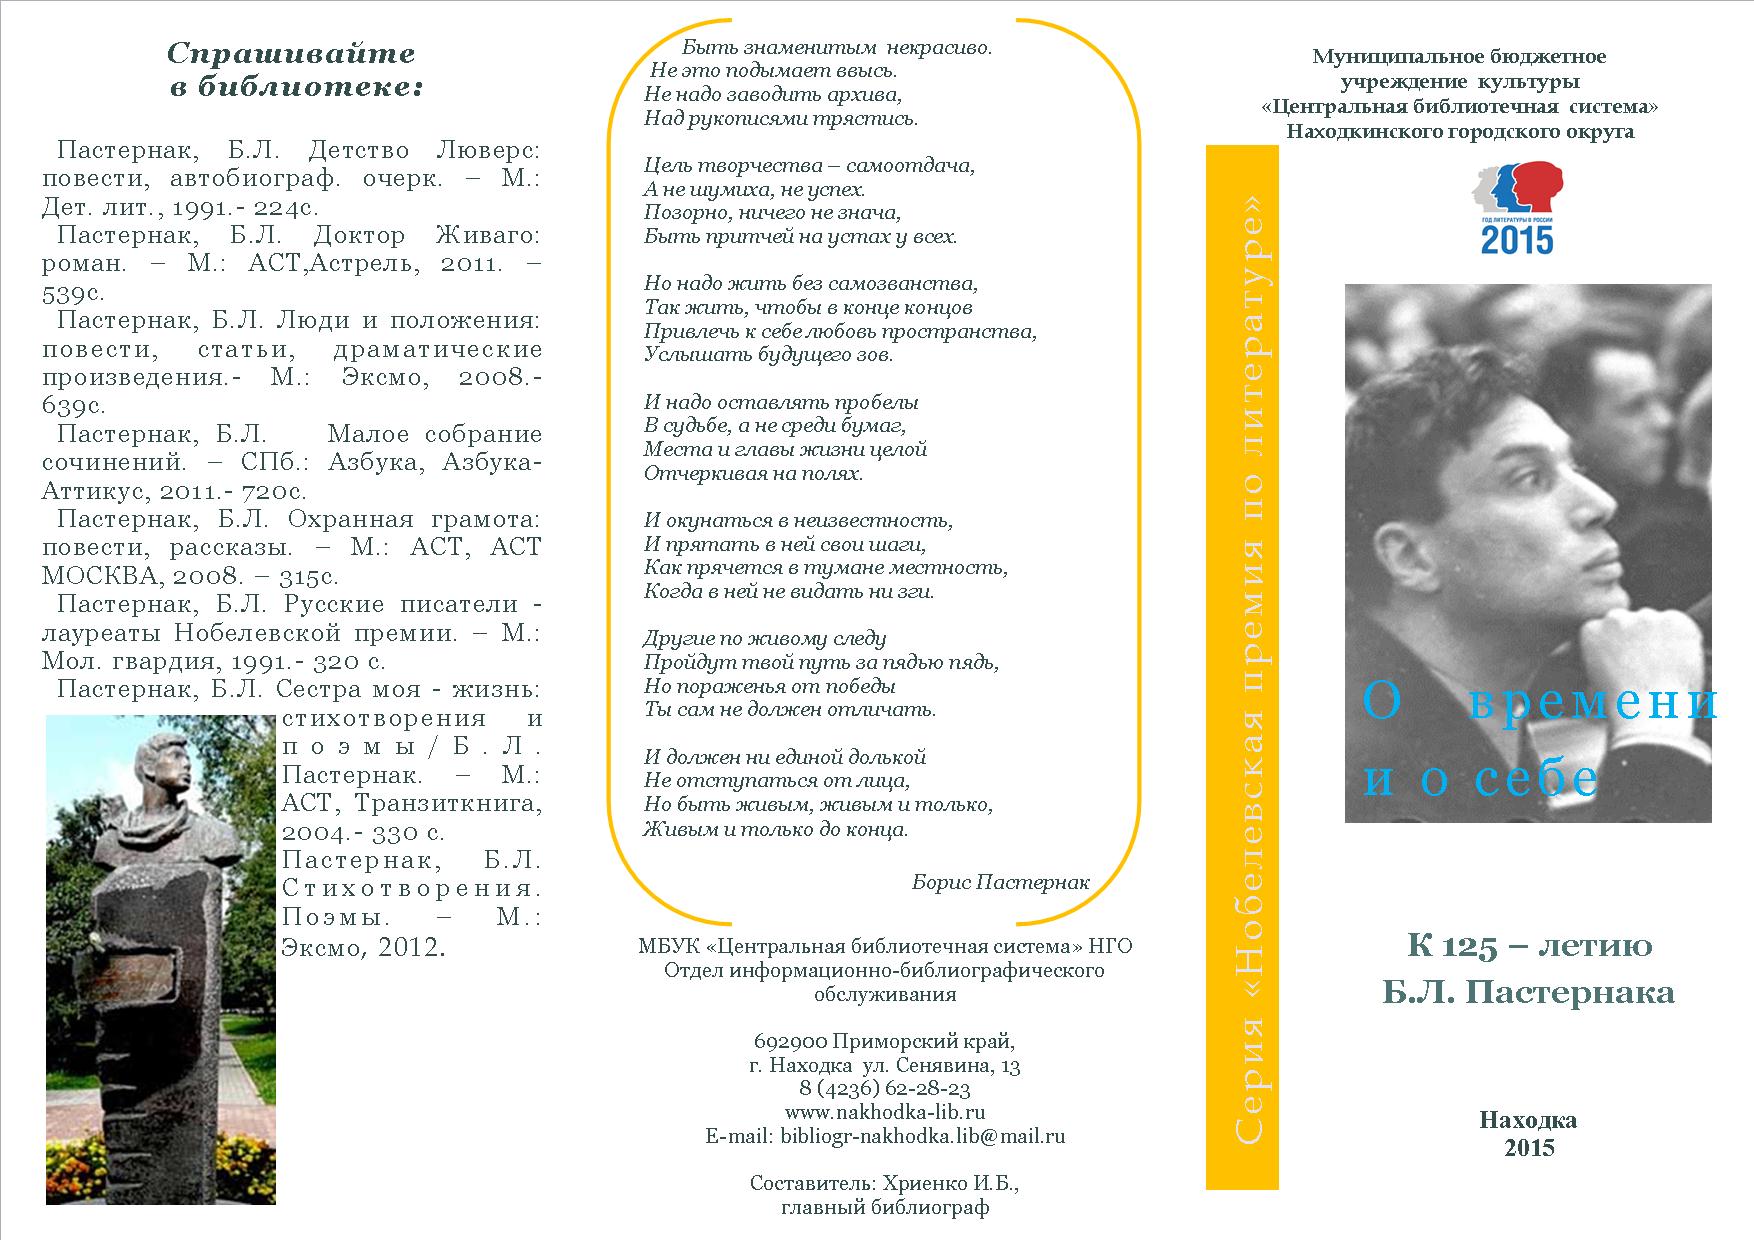 Сочинение: Россияне - лауреаты Нобелевской премии по литературе (И.Бунин и Б.Пастернак)